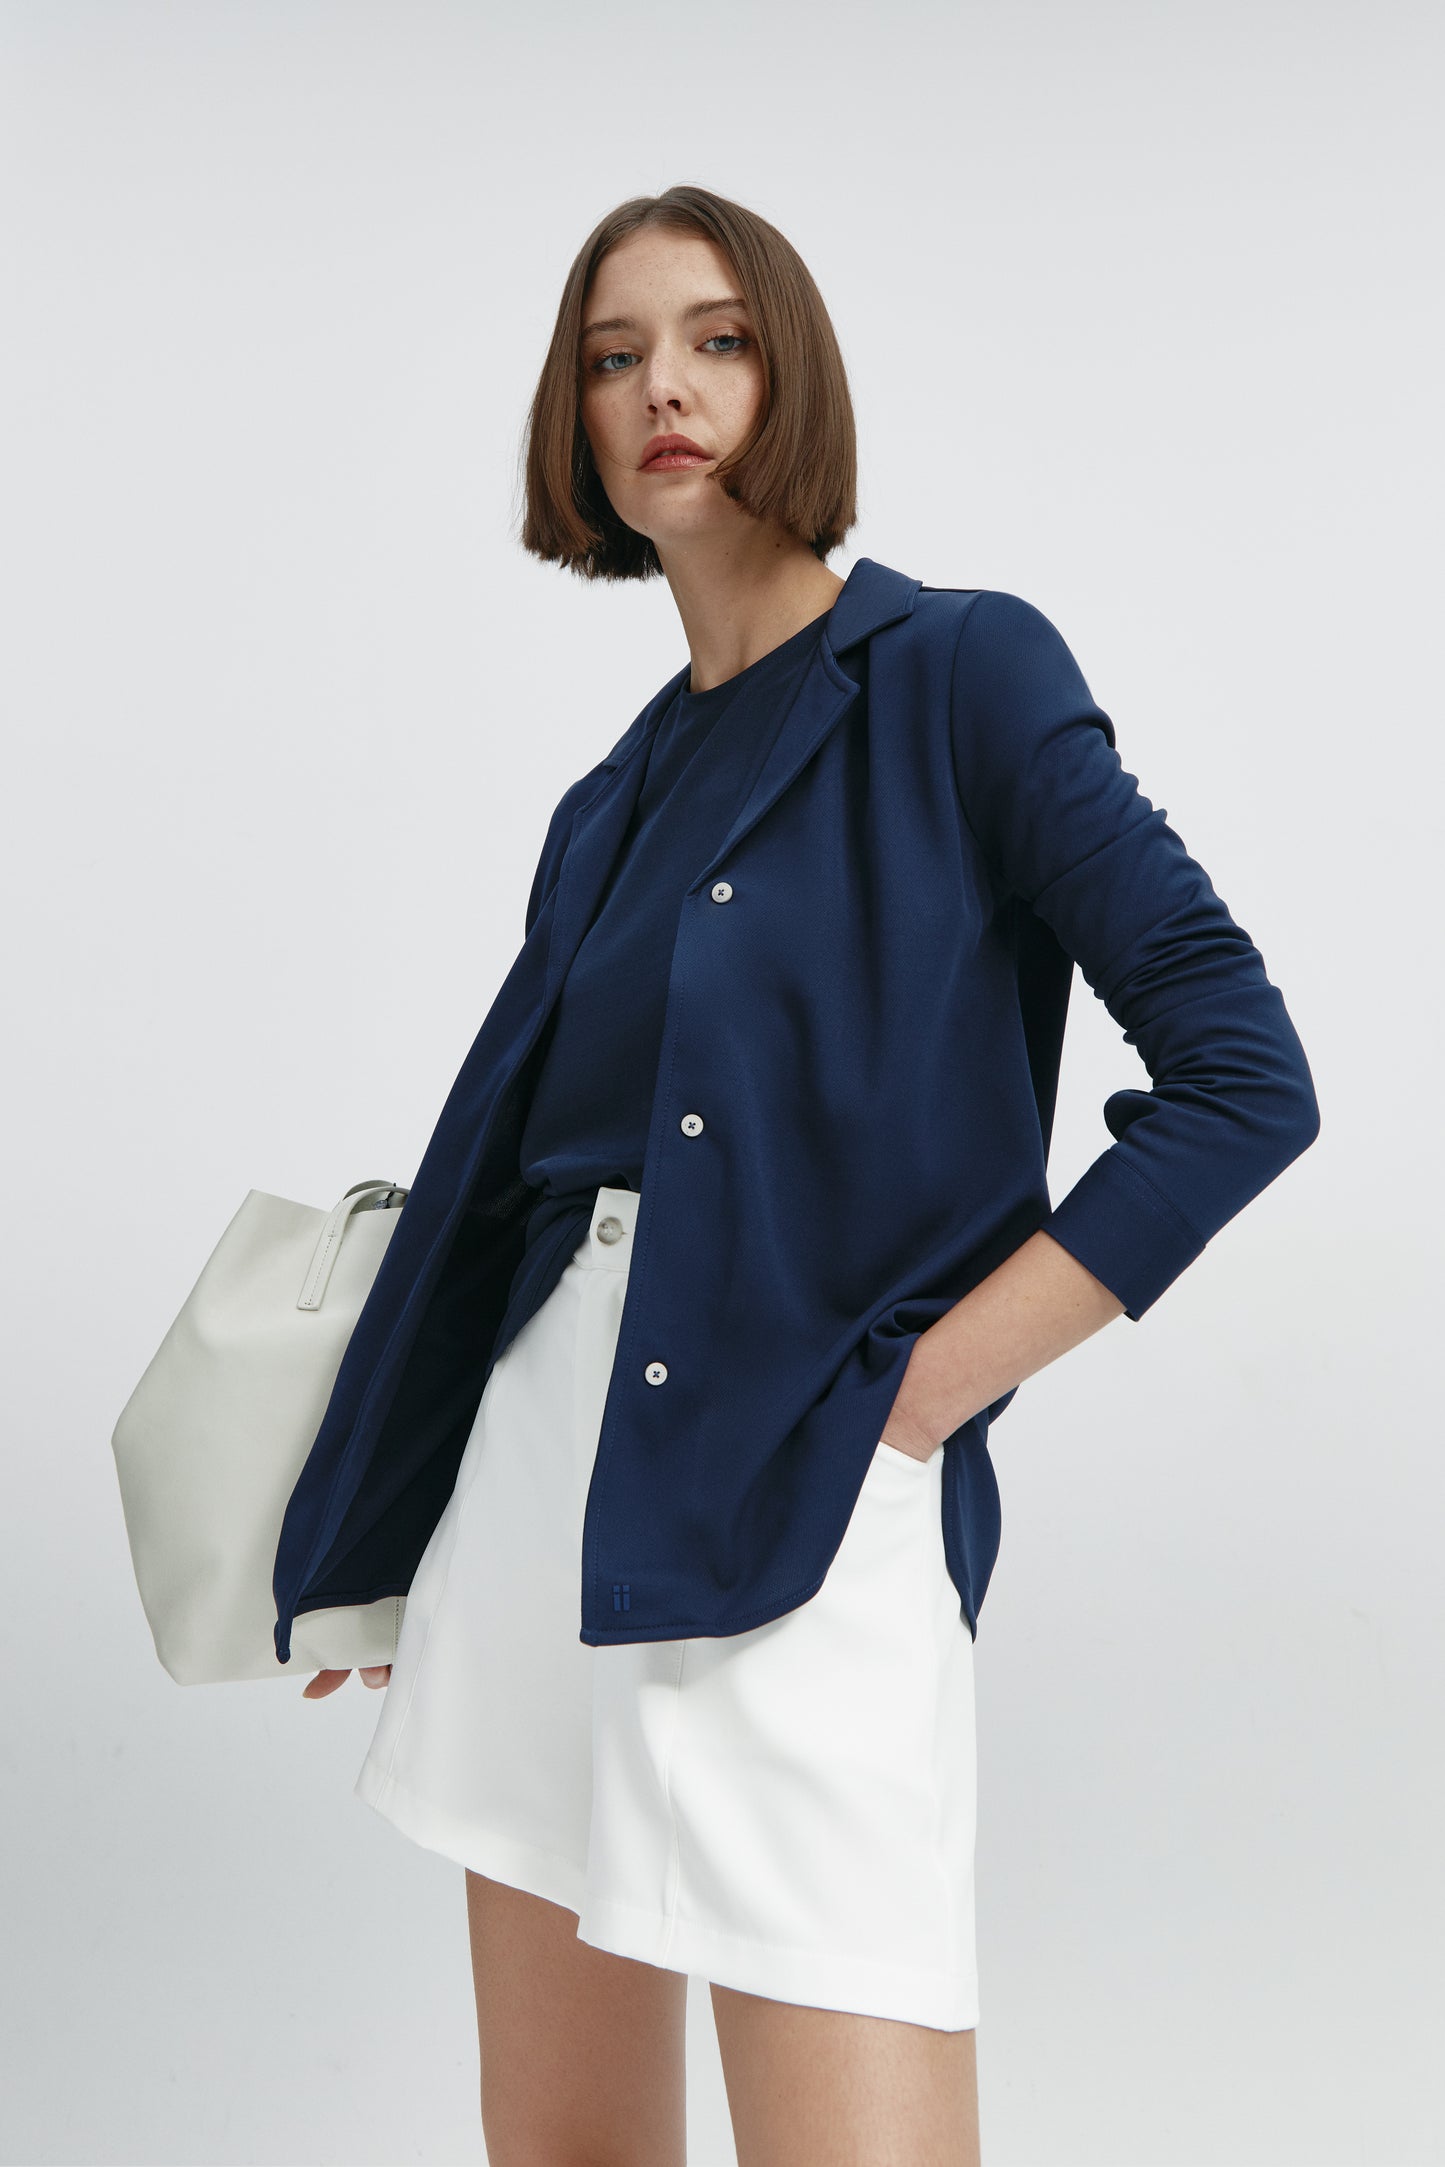 Camisa bowling de mujer azul marino de Sepiia, estilo y versatilidad en una prenda cómoda y resistente. Foto flexibilidad